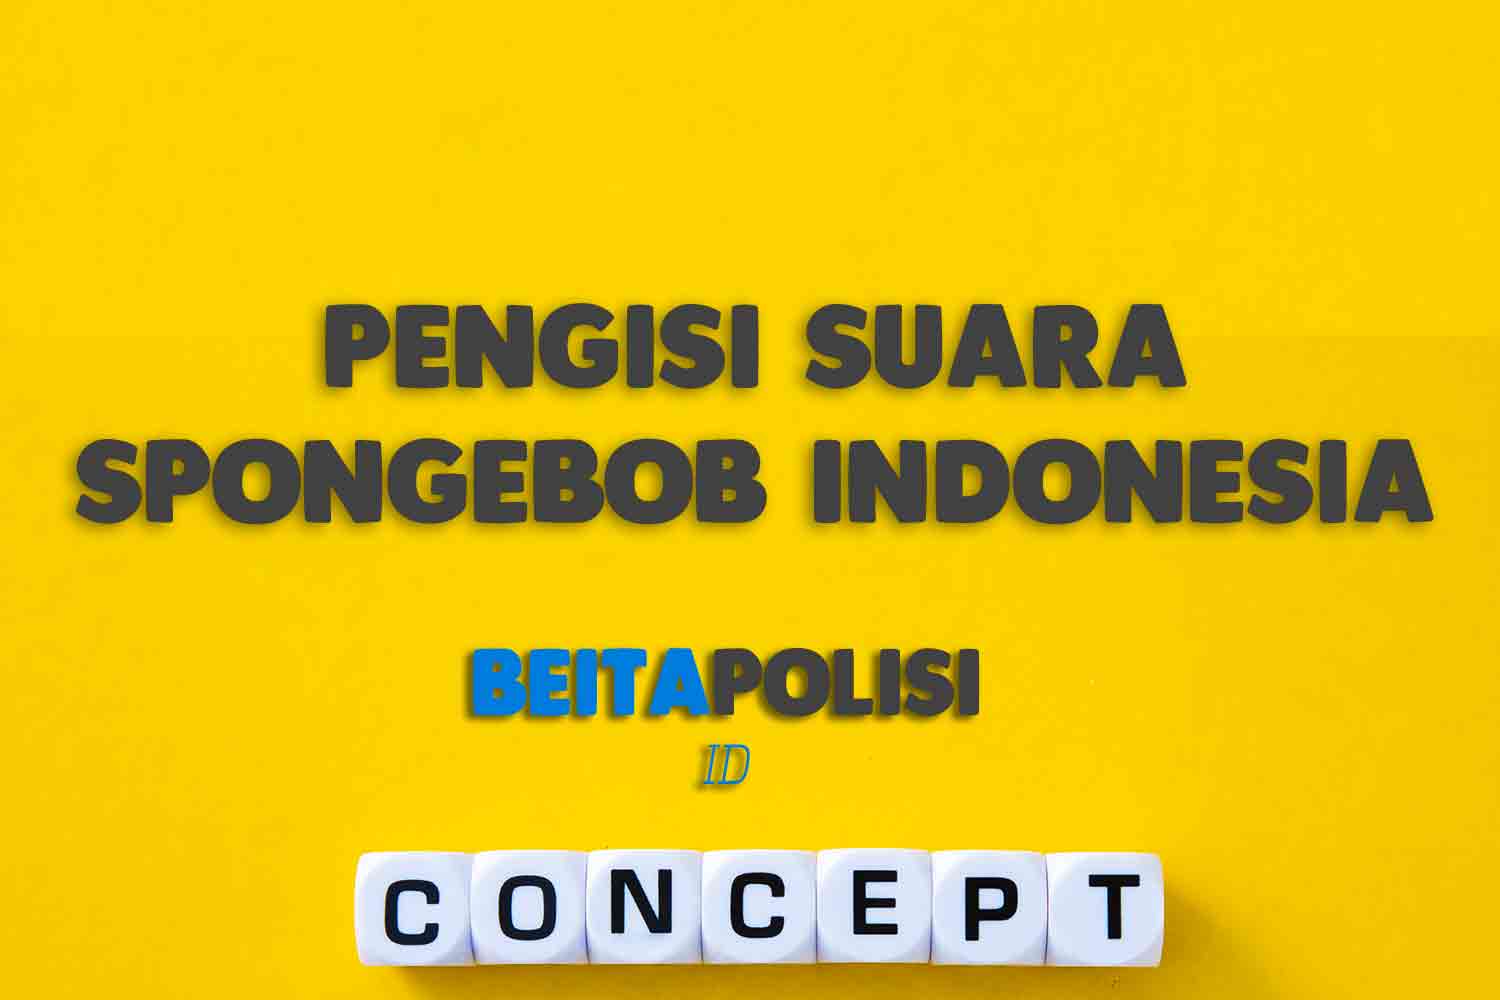 Pengisi Suara Spongebob Indonesia Apakah Sudah Meninggal